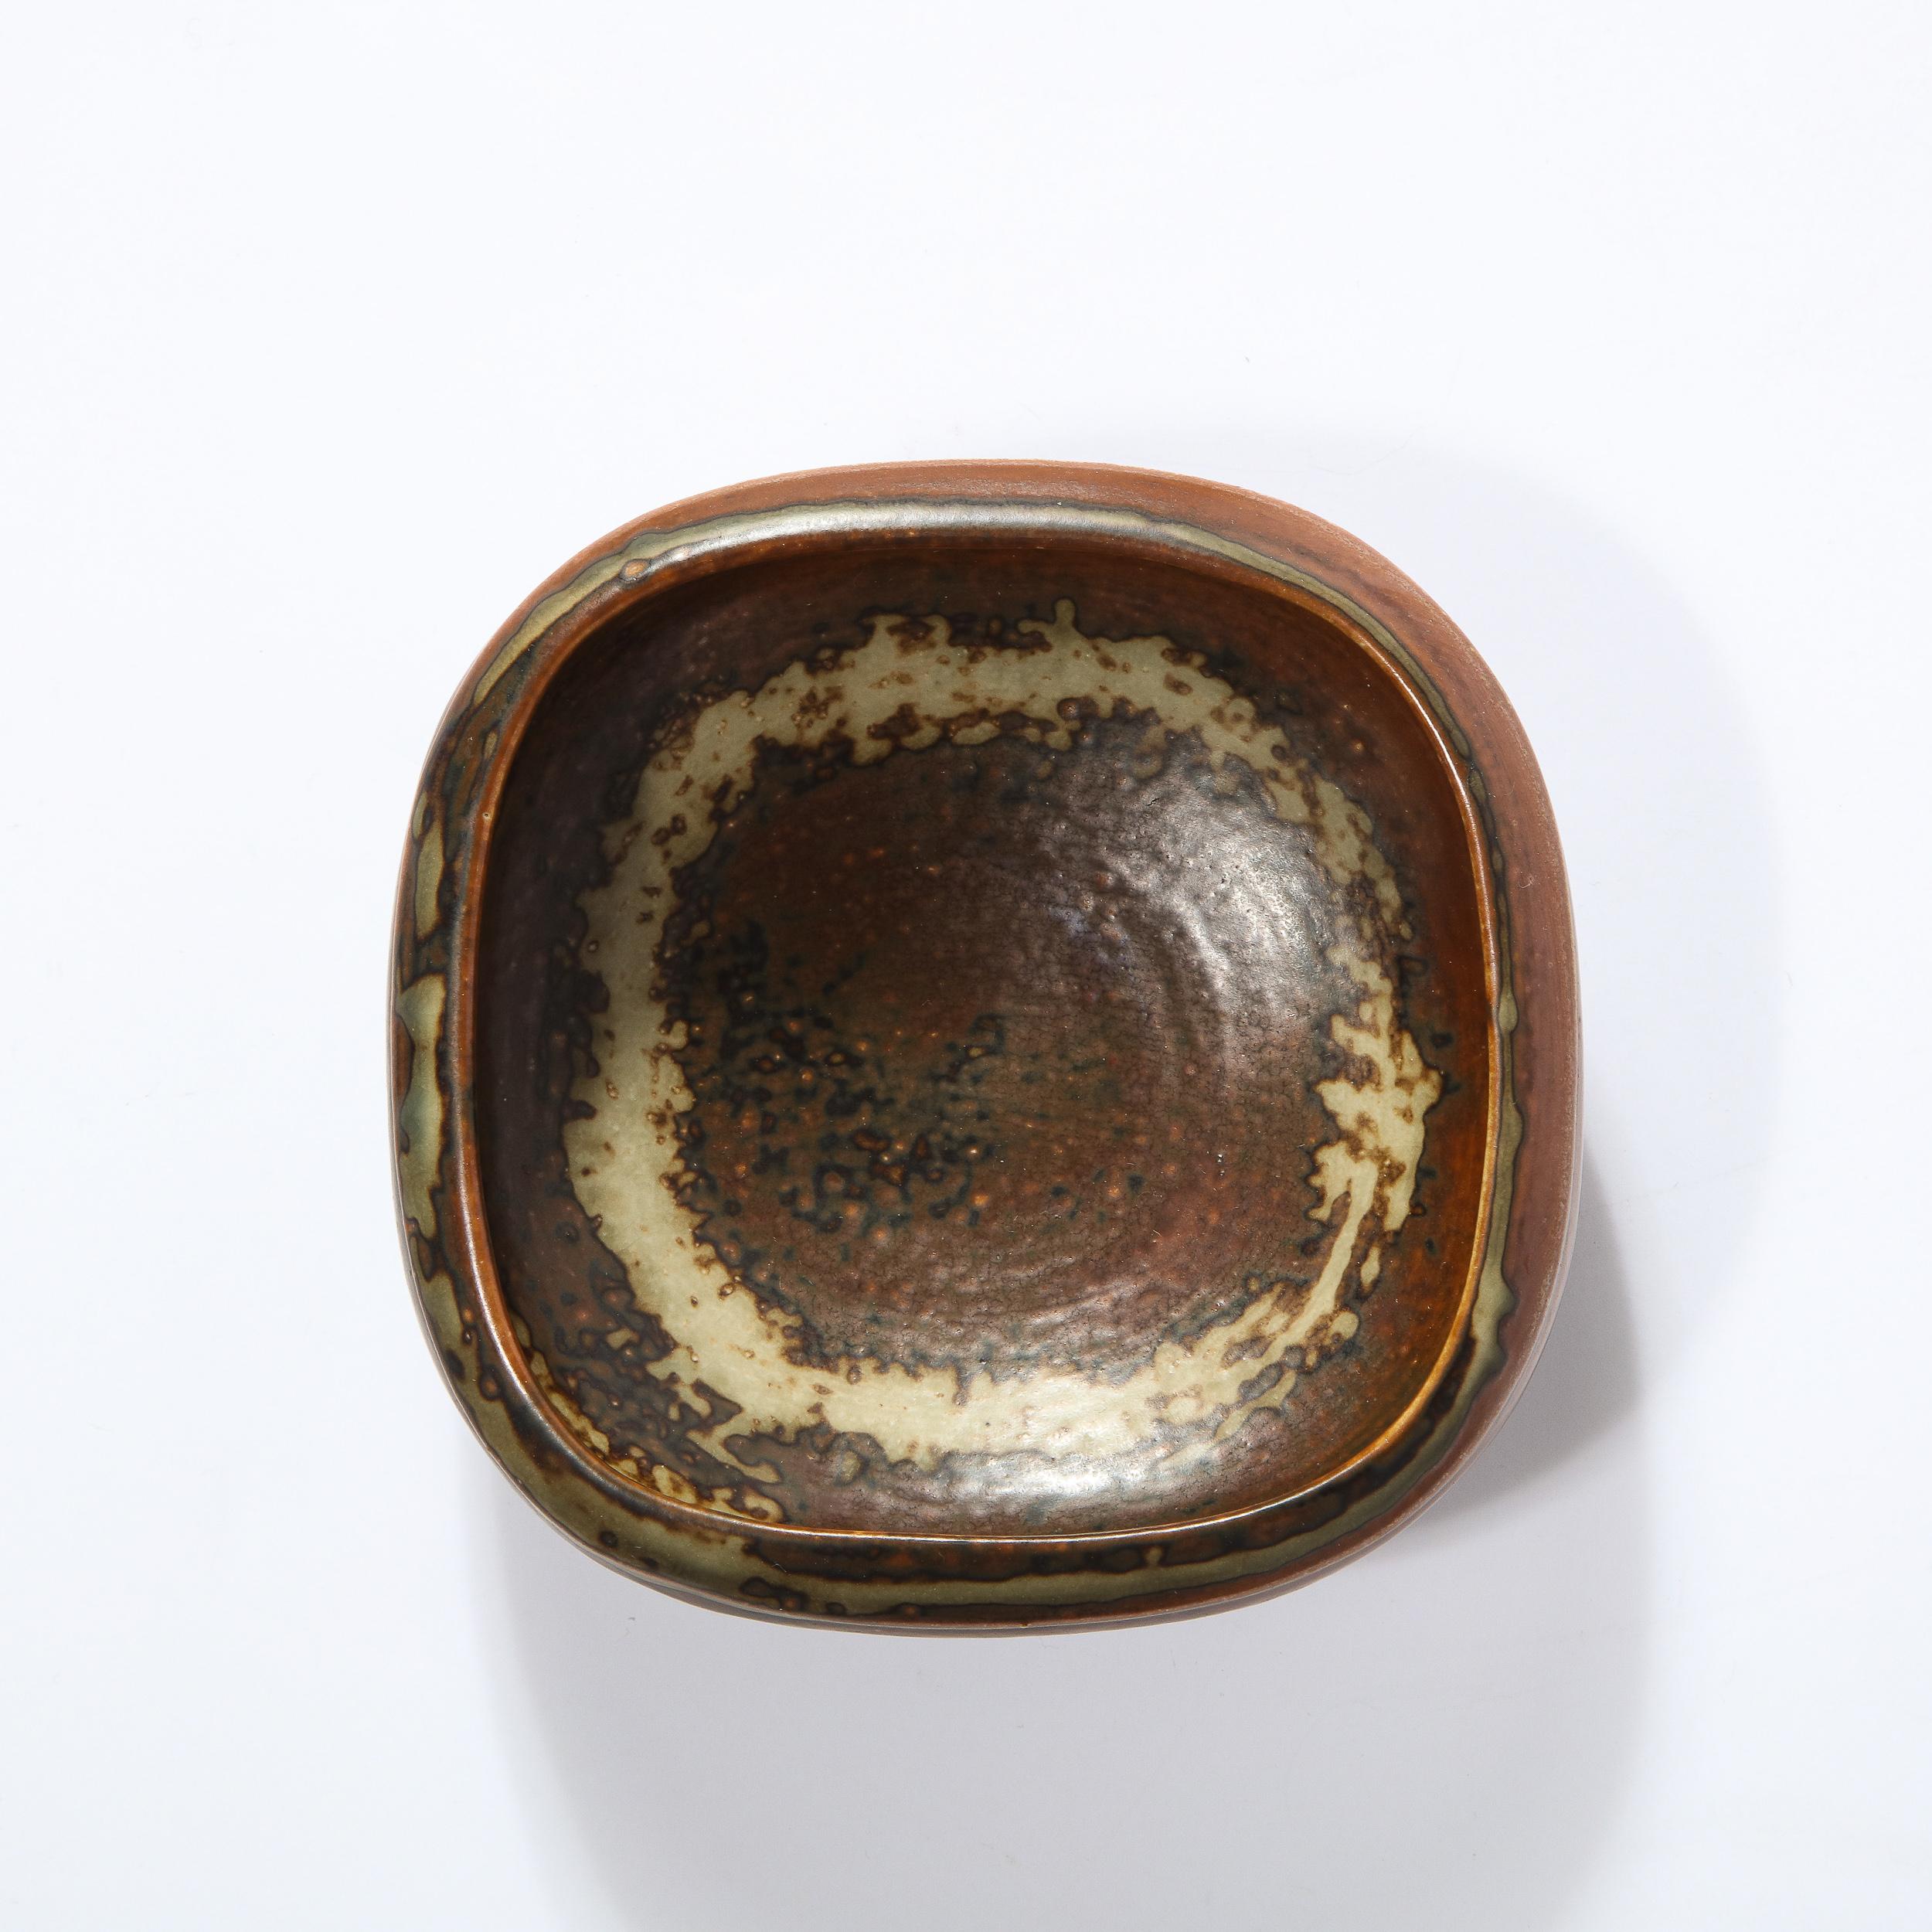 Ce magnifique bol en grès dans des tons de brun, taupe et caoutchouc est fabriqué à la main par Bode Willumsen pour Royal Copenhagen avec un merveilleux motif organique émaillé à la main. Cette pièce est également signée Royal Copenhagen, Danemark